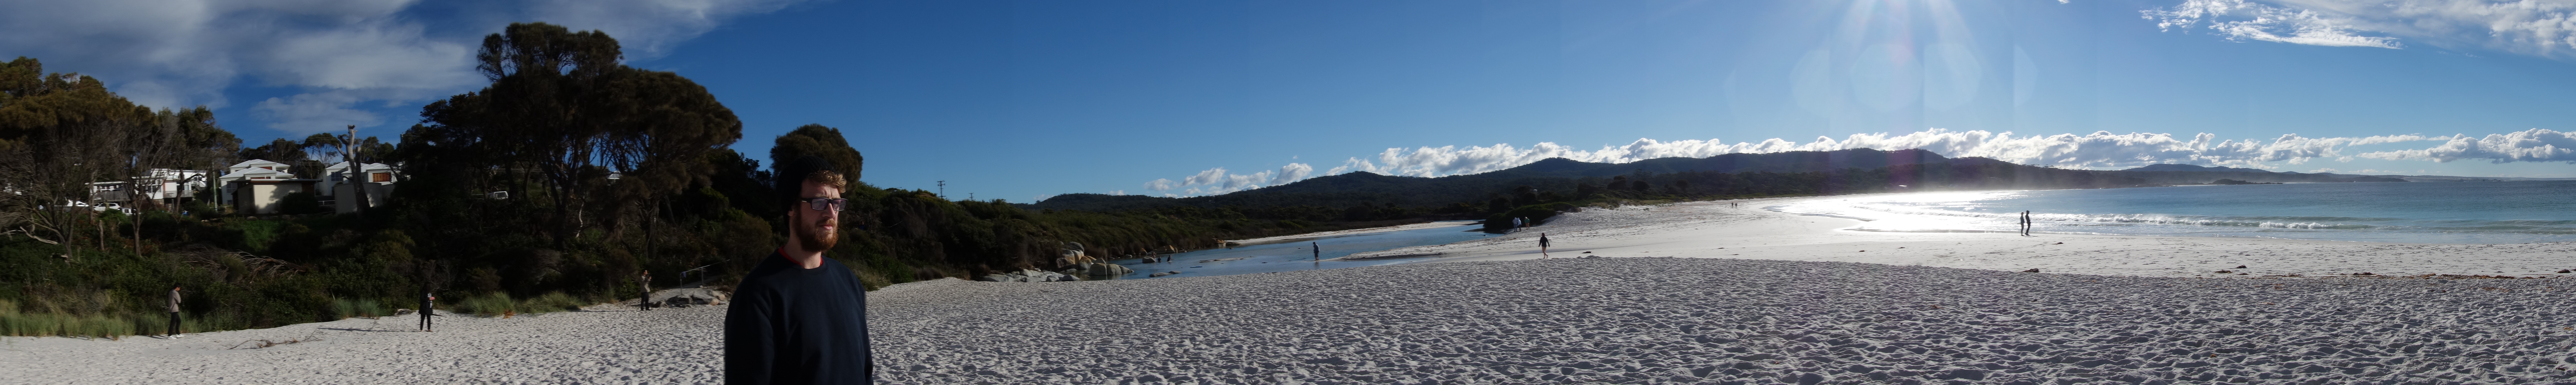 Australie- Tasmanie: Ahh vous etes rassure? Des photos de paysages!